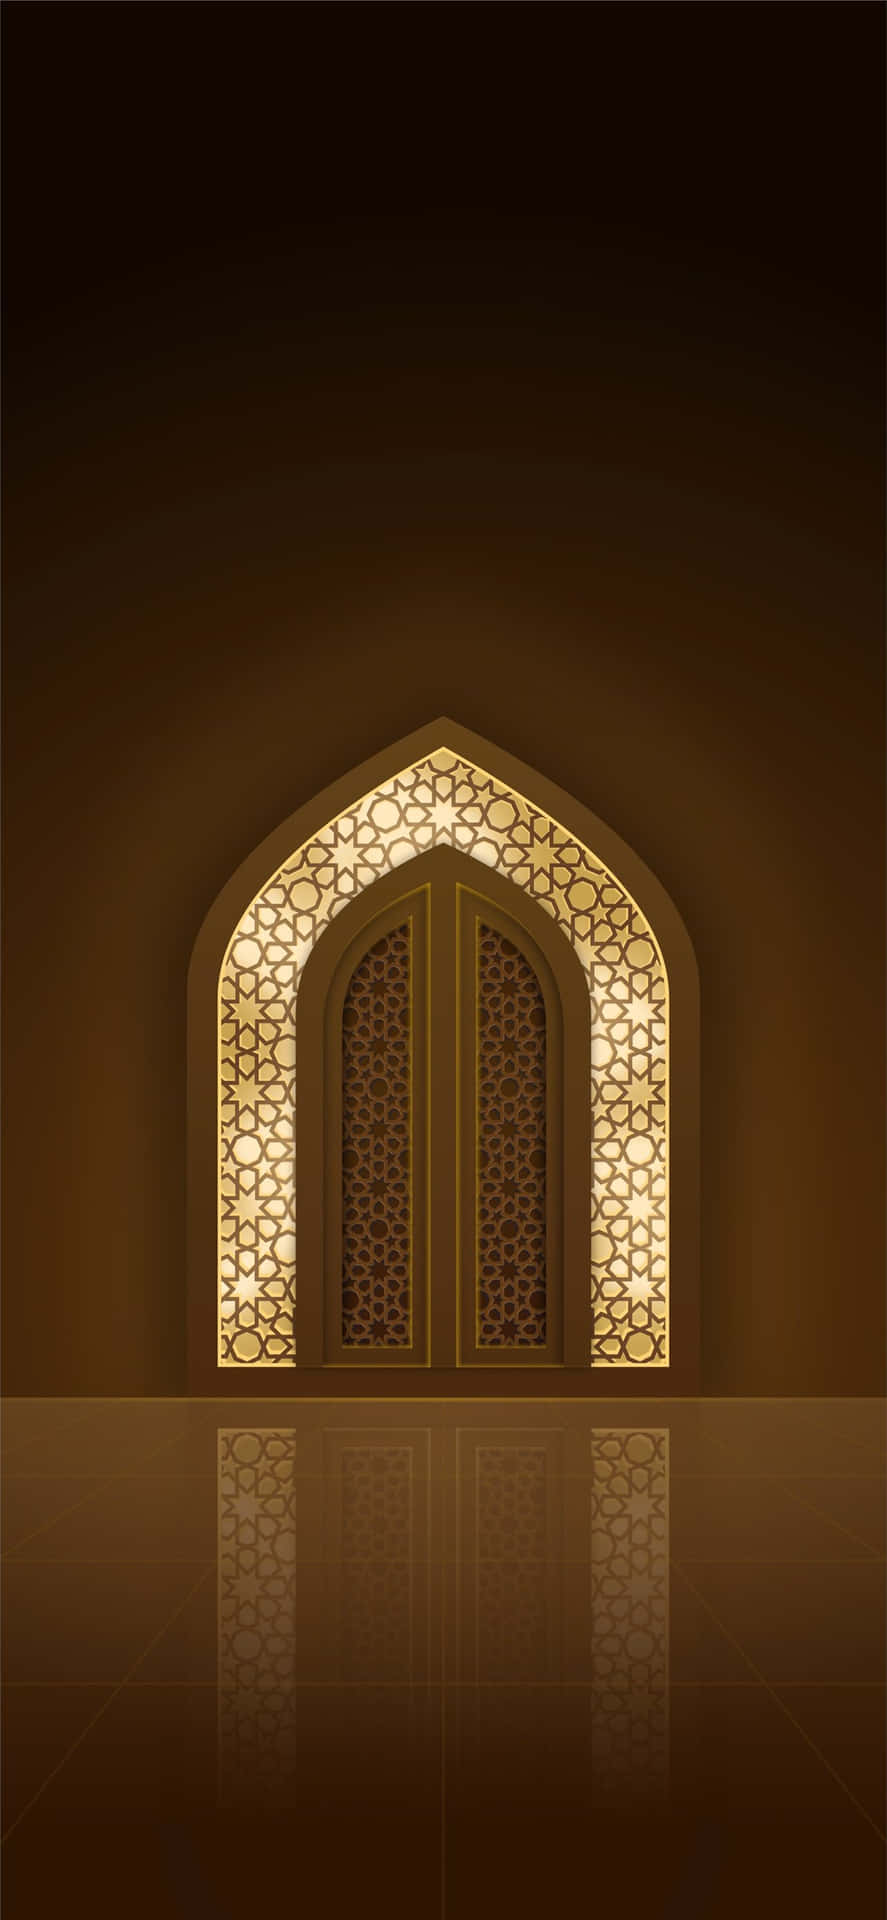 Ramadan Archway Illumination Wallpaper